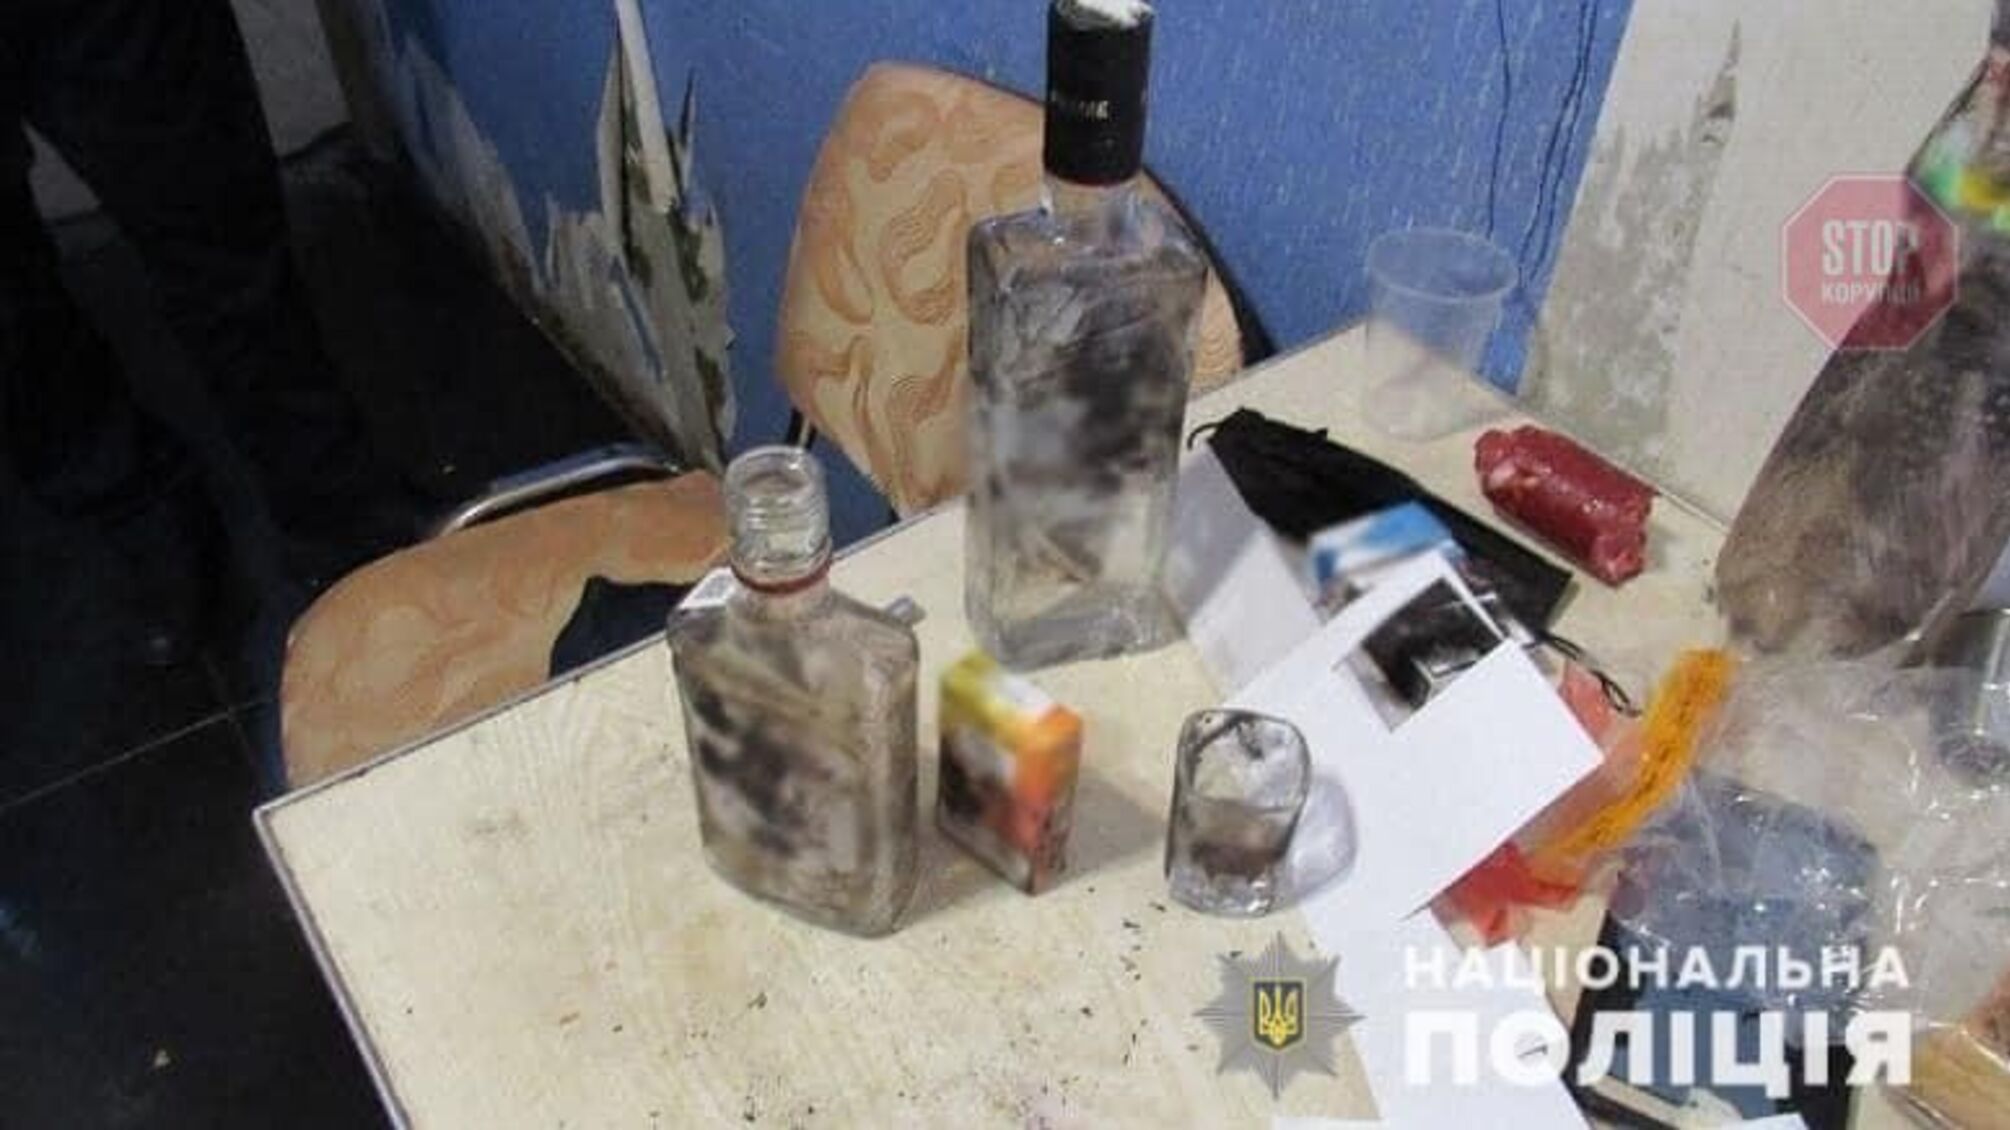 Через ревнощі: у Києві чоловік вдарив знайомого ножем та втік (фото)